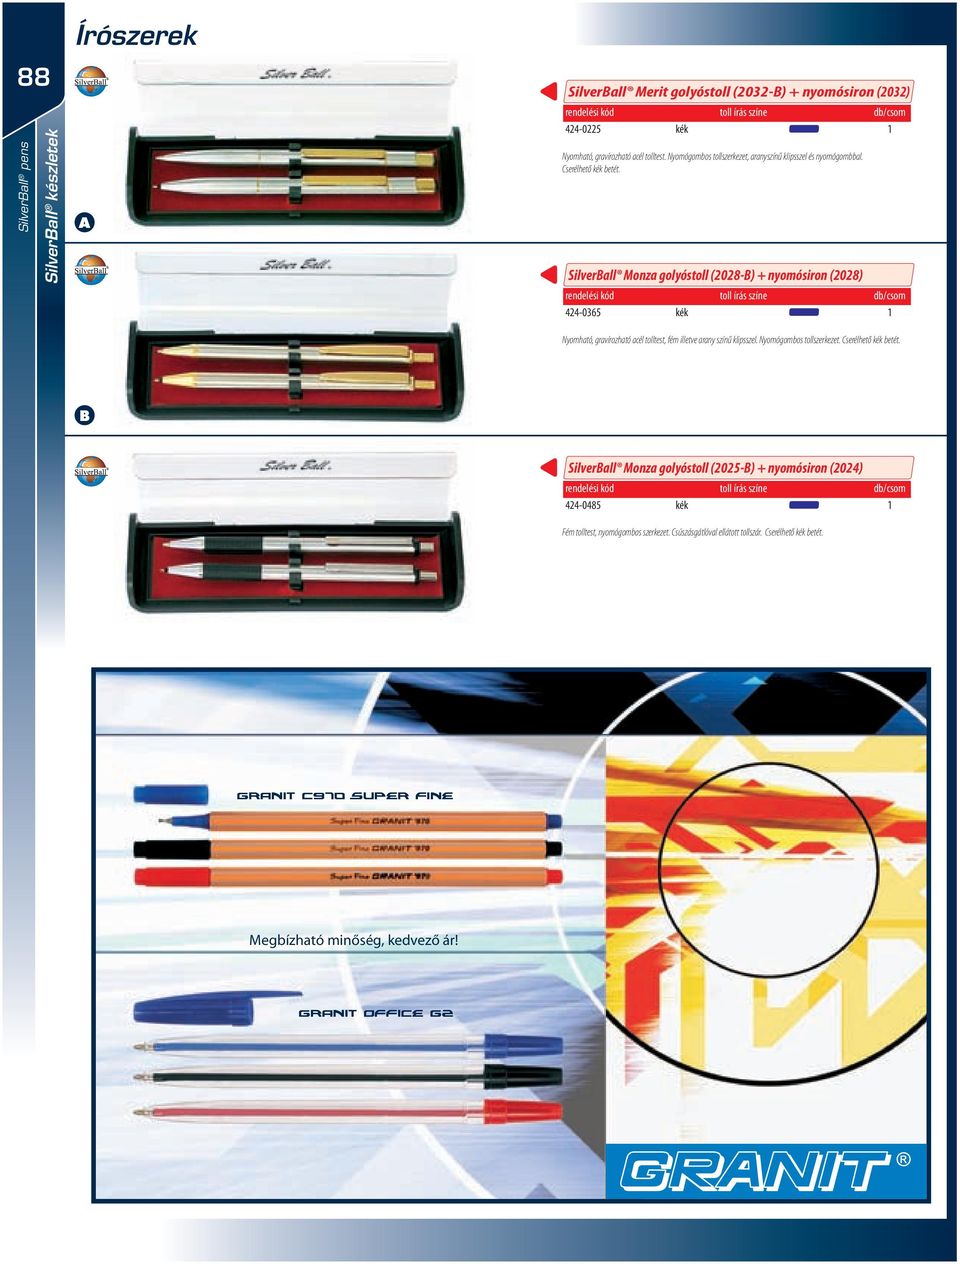 Silverall Monza golyóstoll (2028-) + nyomósiron (2028) toll írás színe db/csom 424-0365 Nyomható, gravírozható acél tolltest, fém illetve arany színű klipsszel.